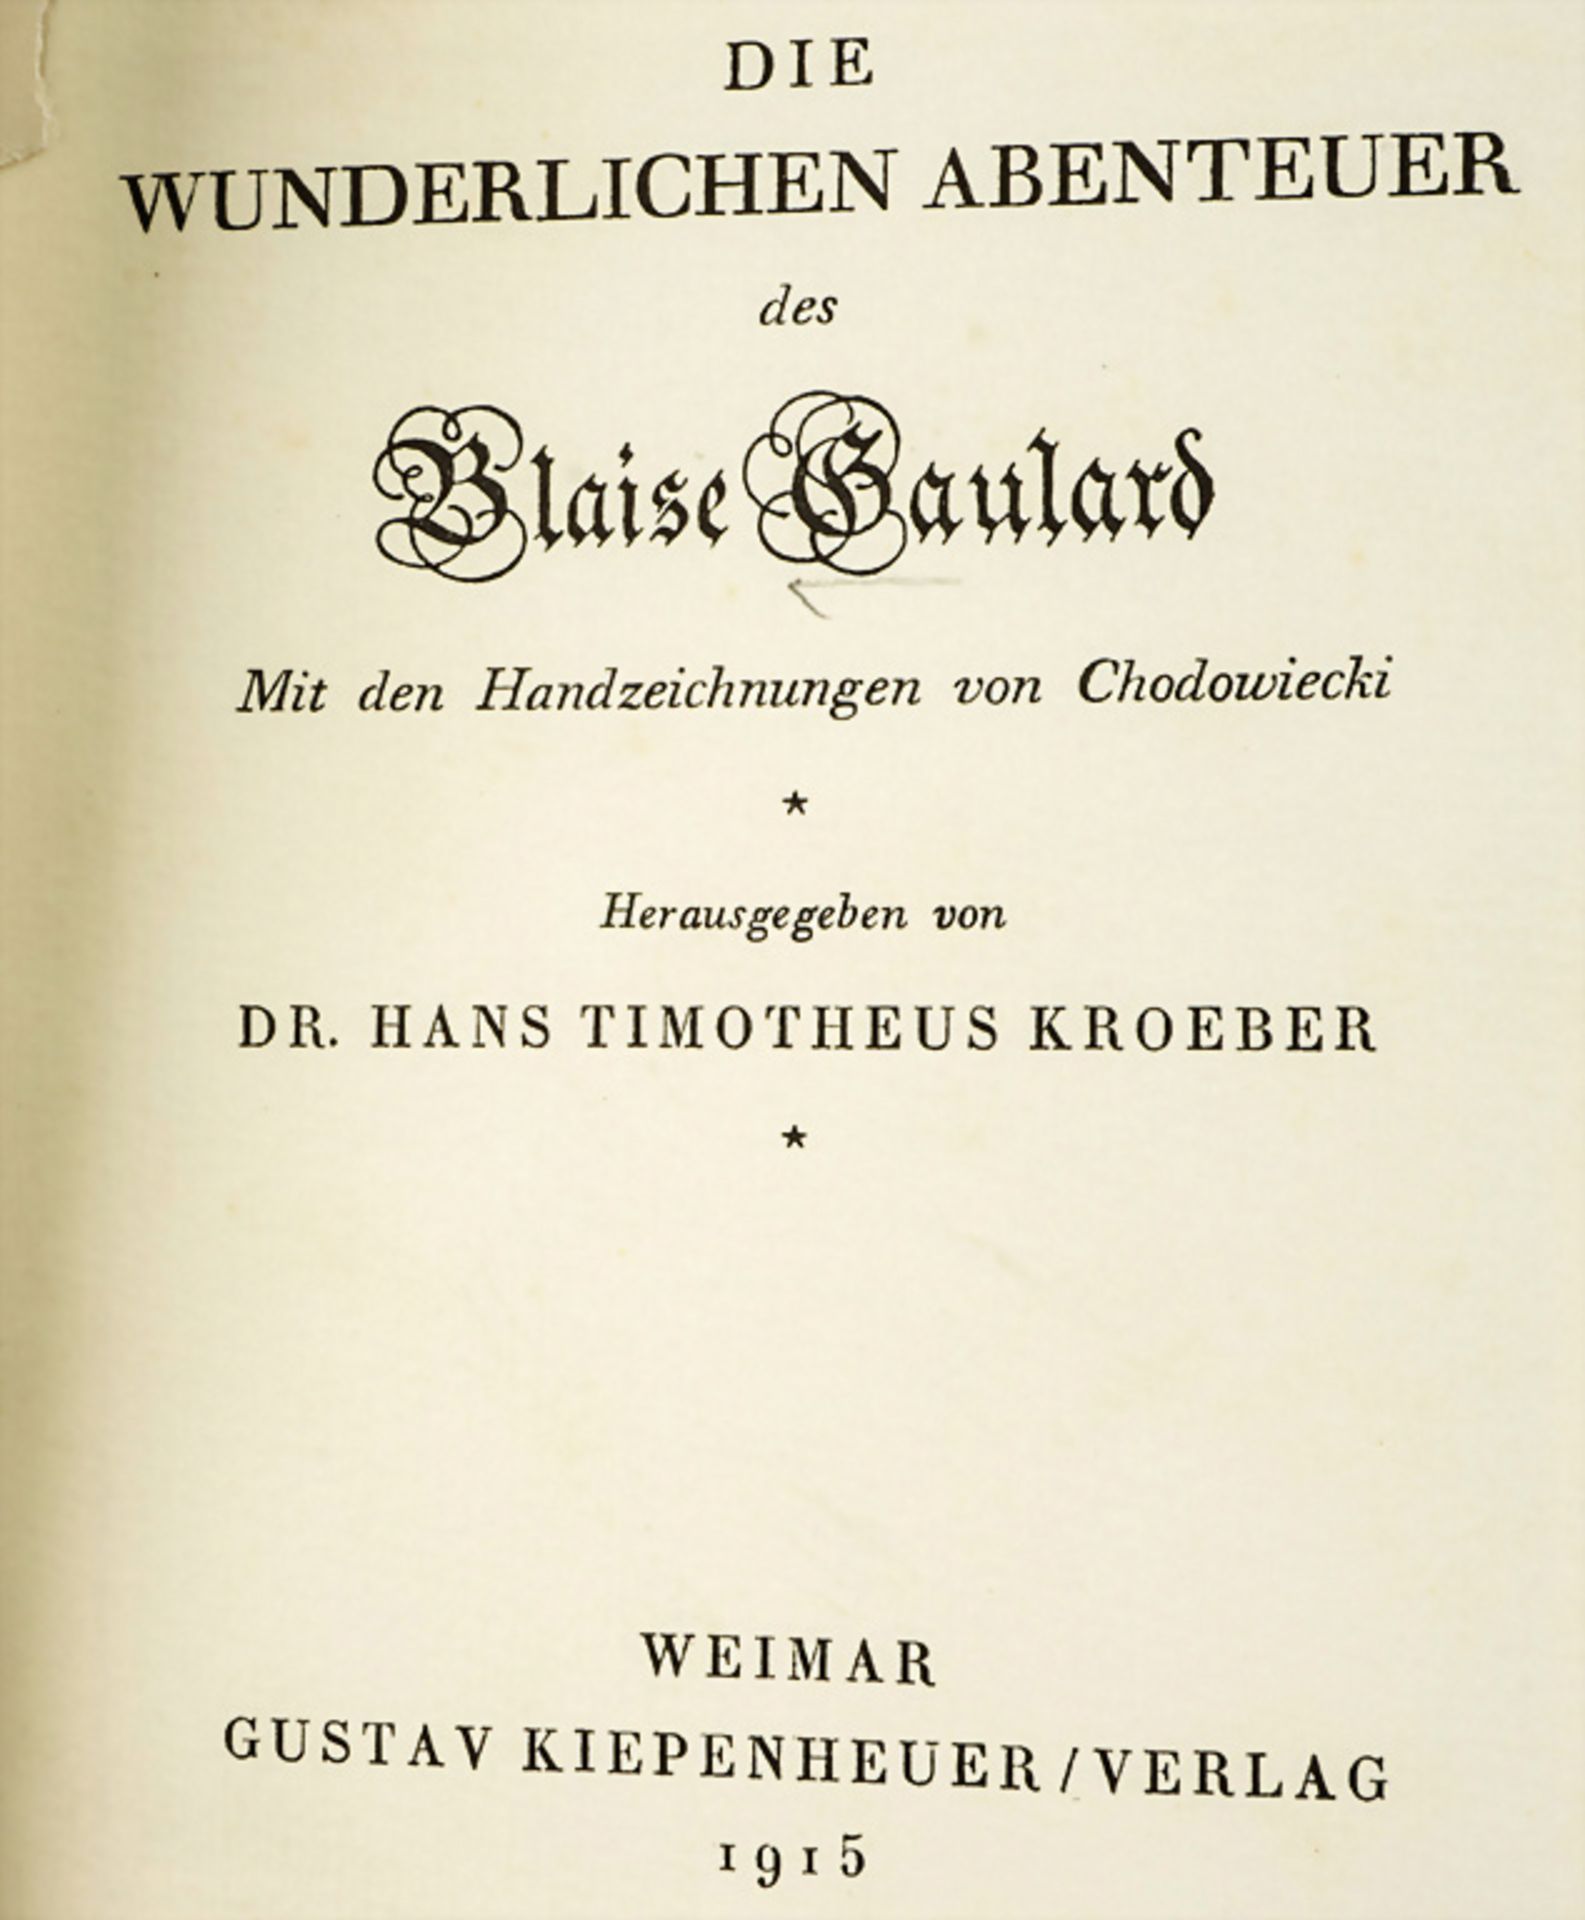 Dr. J.T. Kroeber, 'Die wunderlichen Abenteuer des Blaise Gaulard', 1915